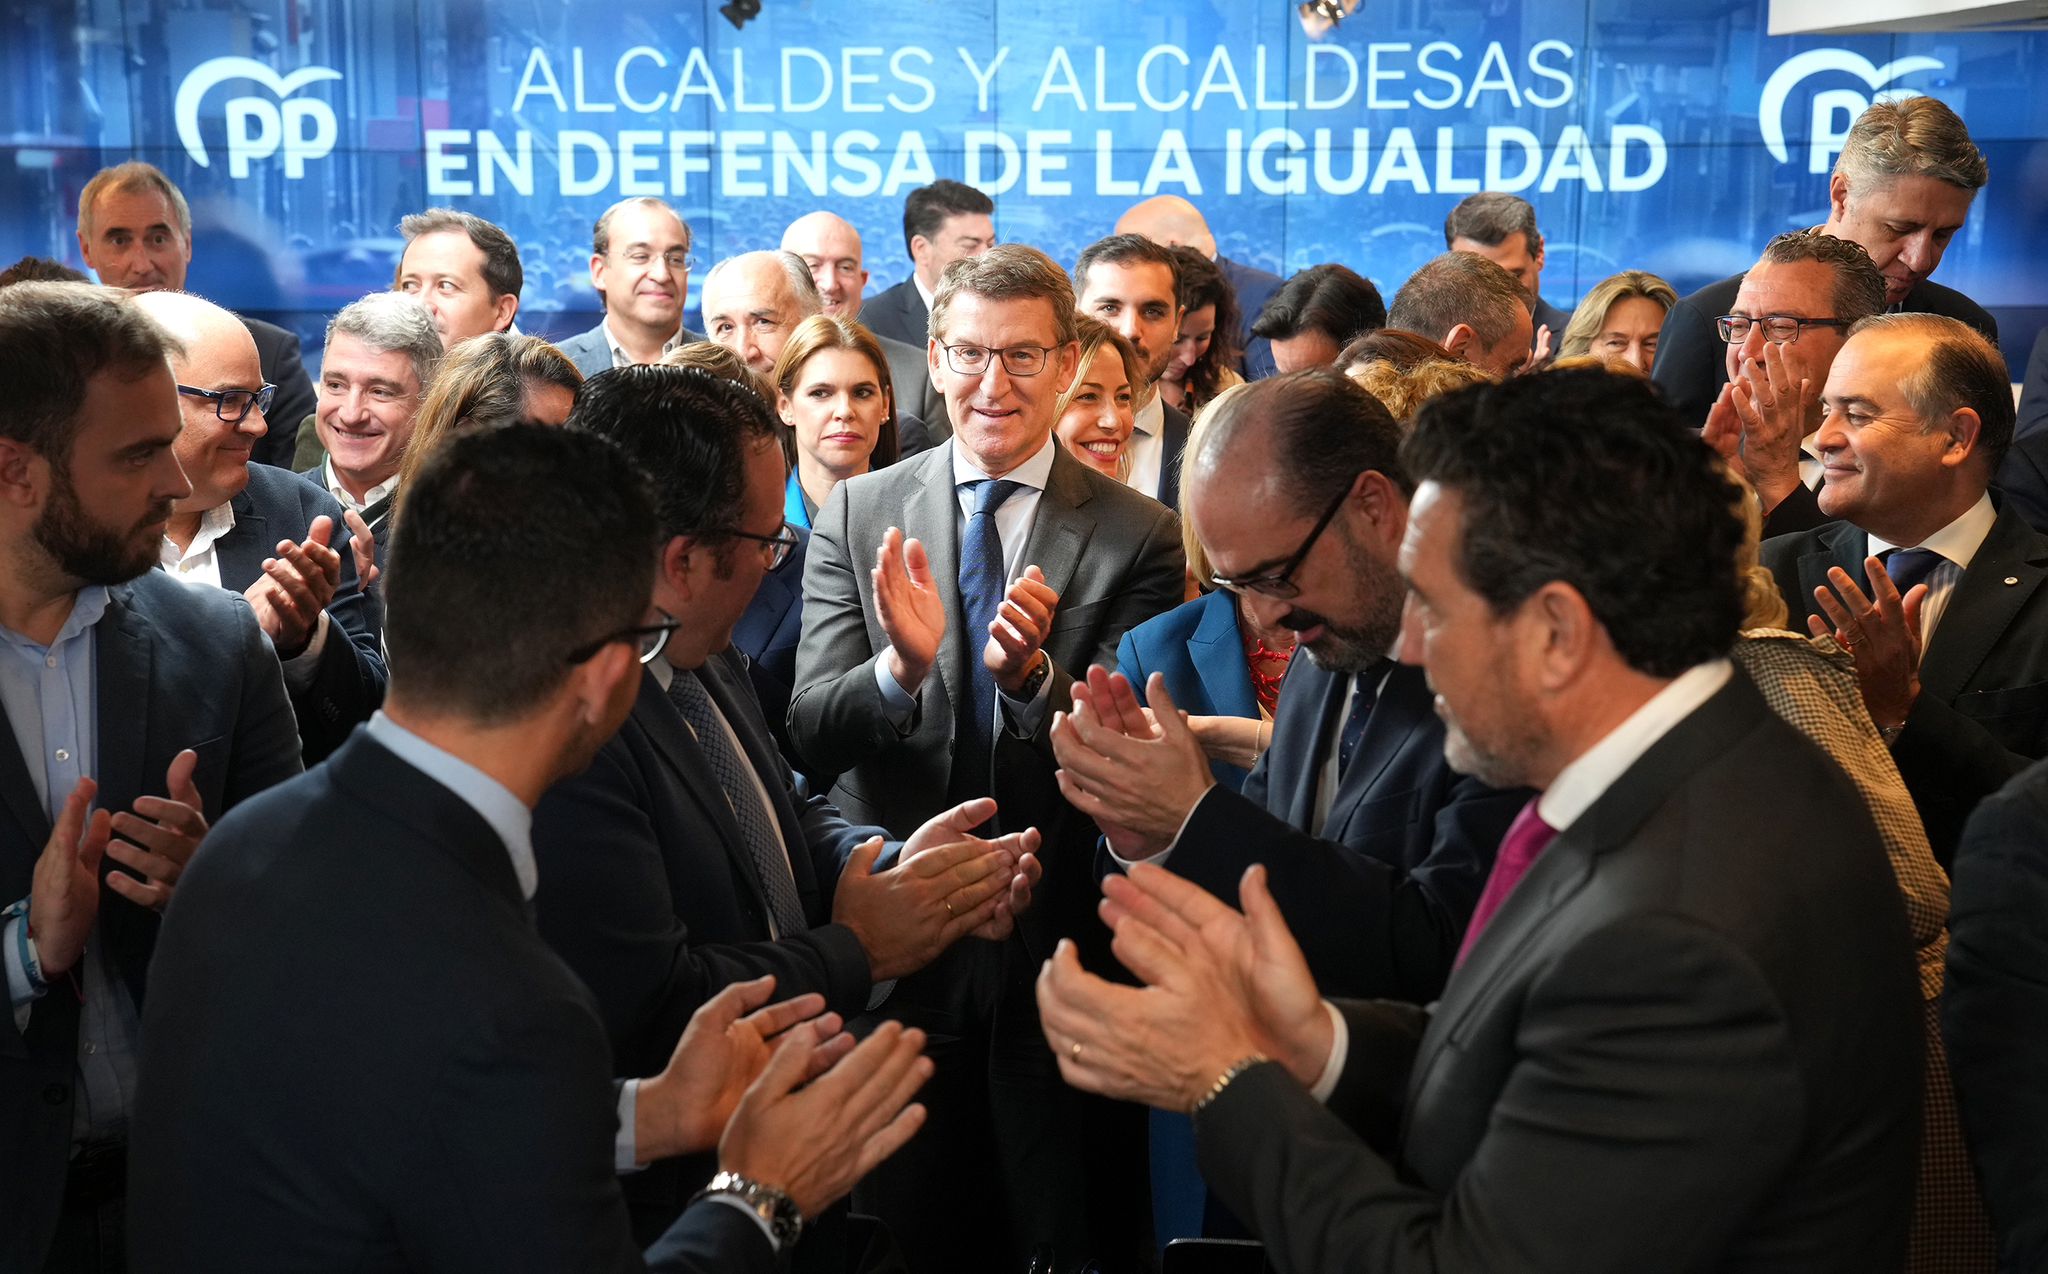 Más de tres mil alcaldes del PP firman un manifiesto para defender la igualdad de los españoles frente a Sánchez